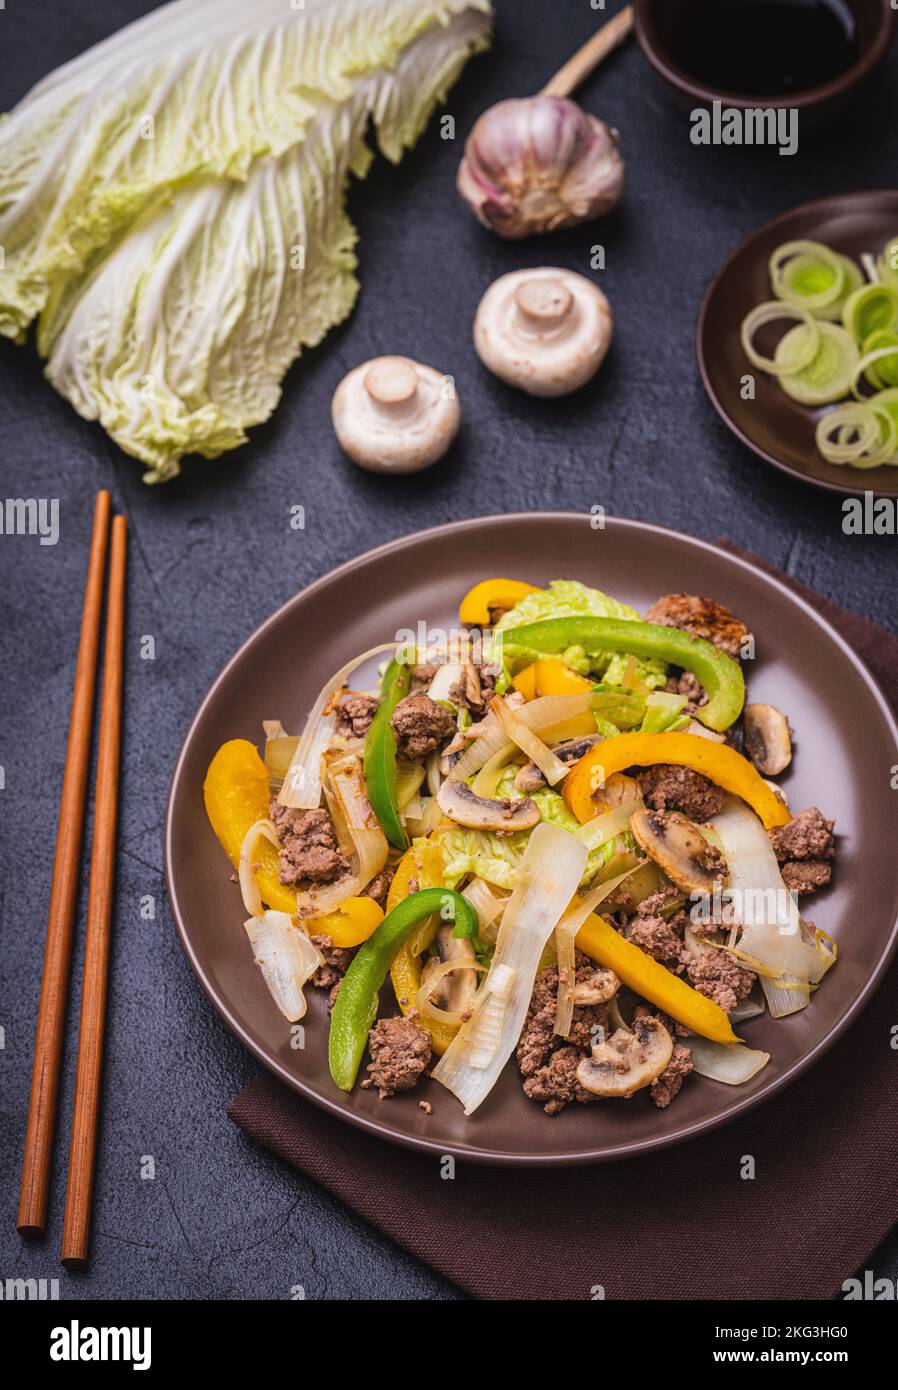 Plato de dieta keto: Salteado con carne picada y verduras verdes. comida baja en carbohidratos. Foto de stock